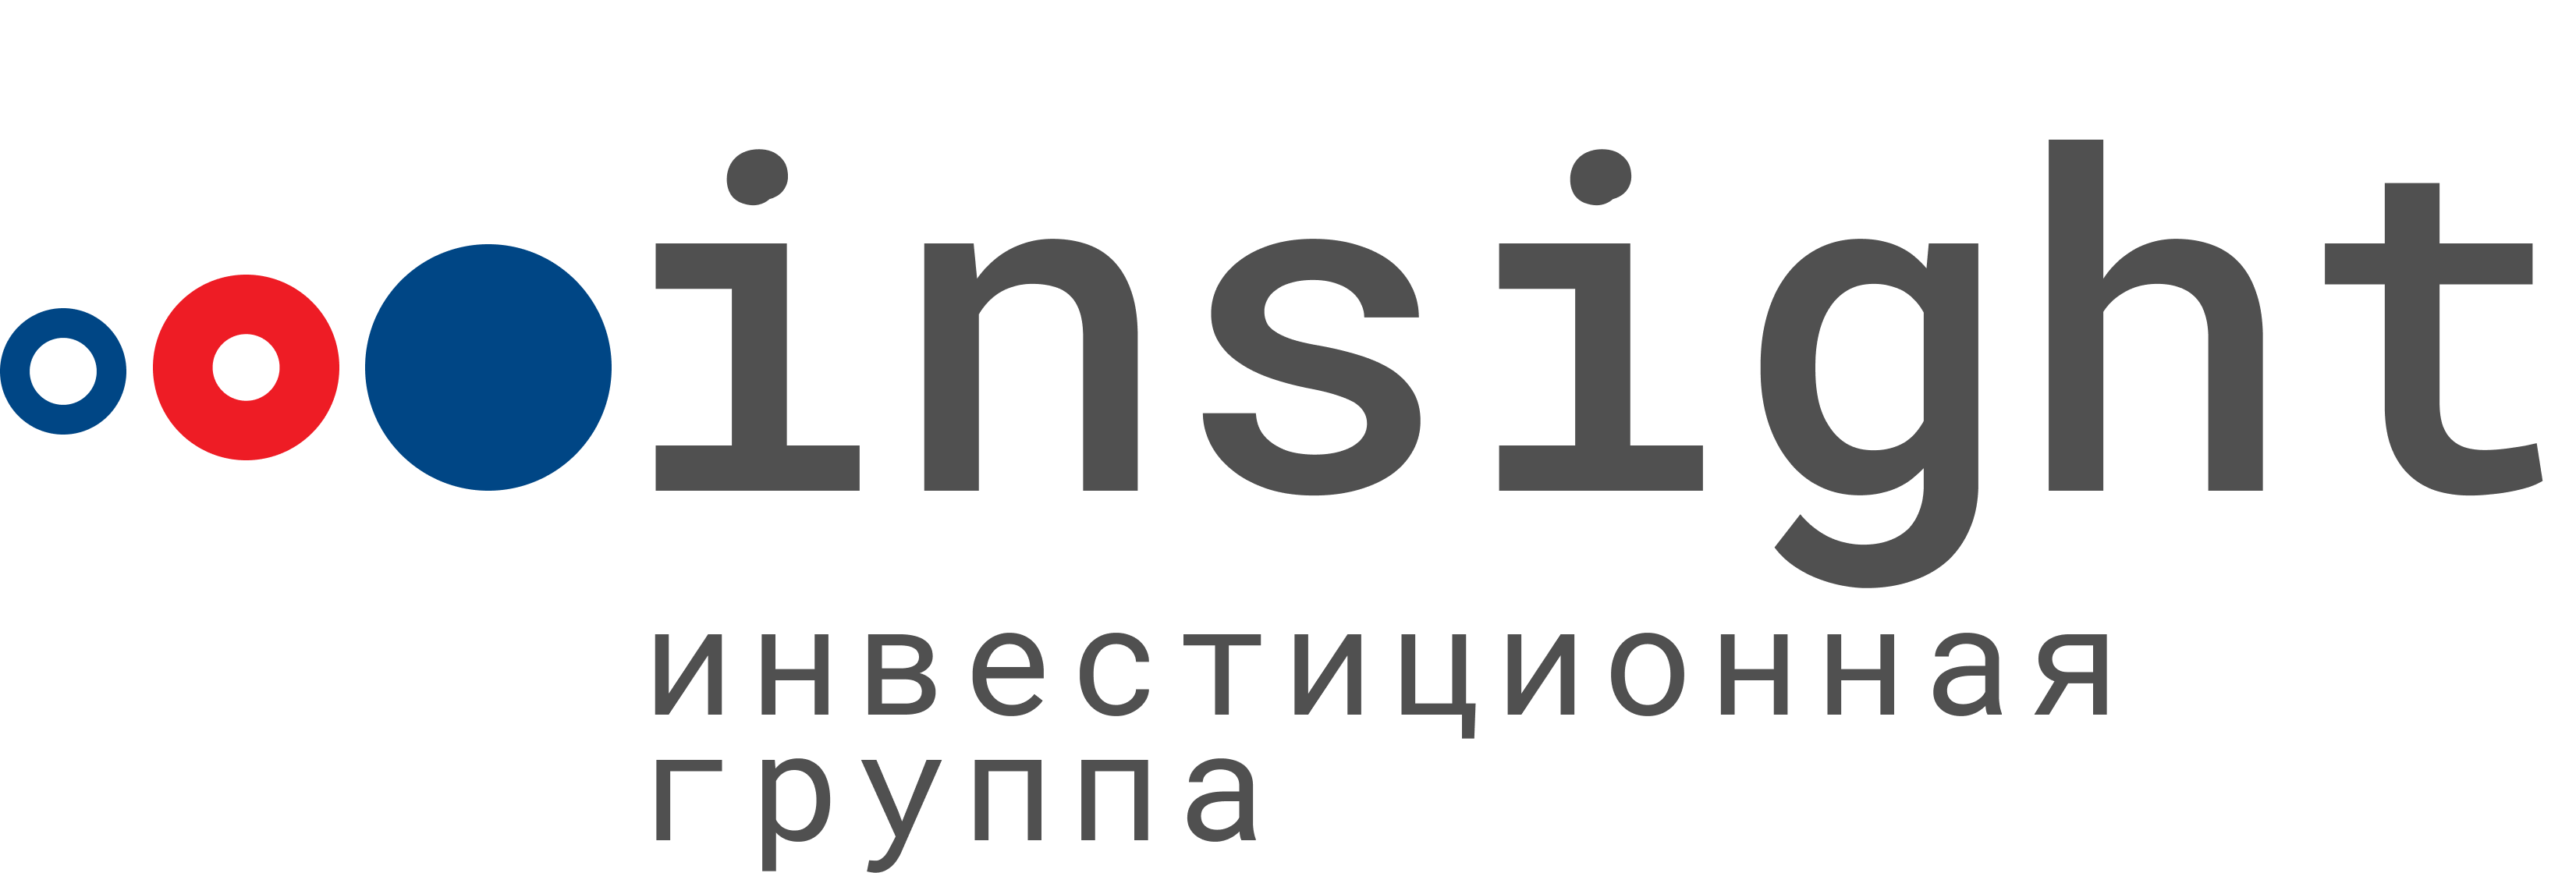 Инсайт комплекс. ООО Инсайт. Insight инвестиционная группа. Инвестиционная группа Insight logo. Инвестиционная компания «Инсайт» логотип.